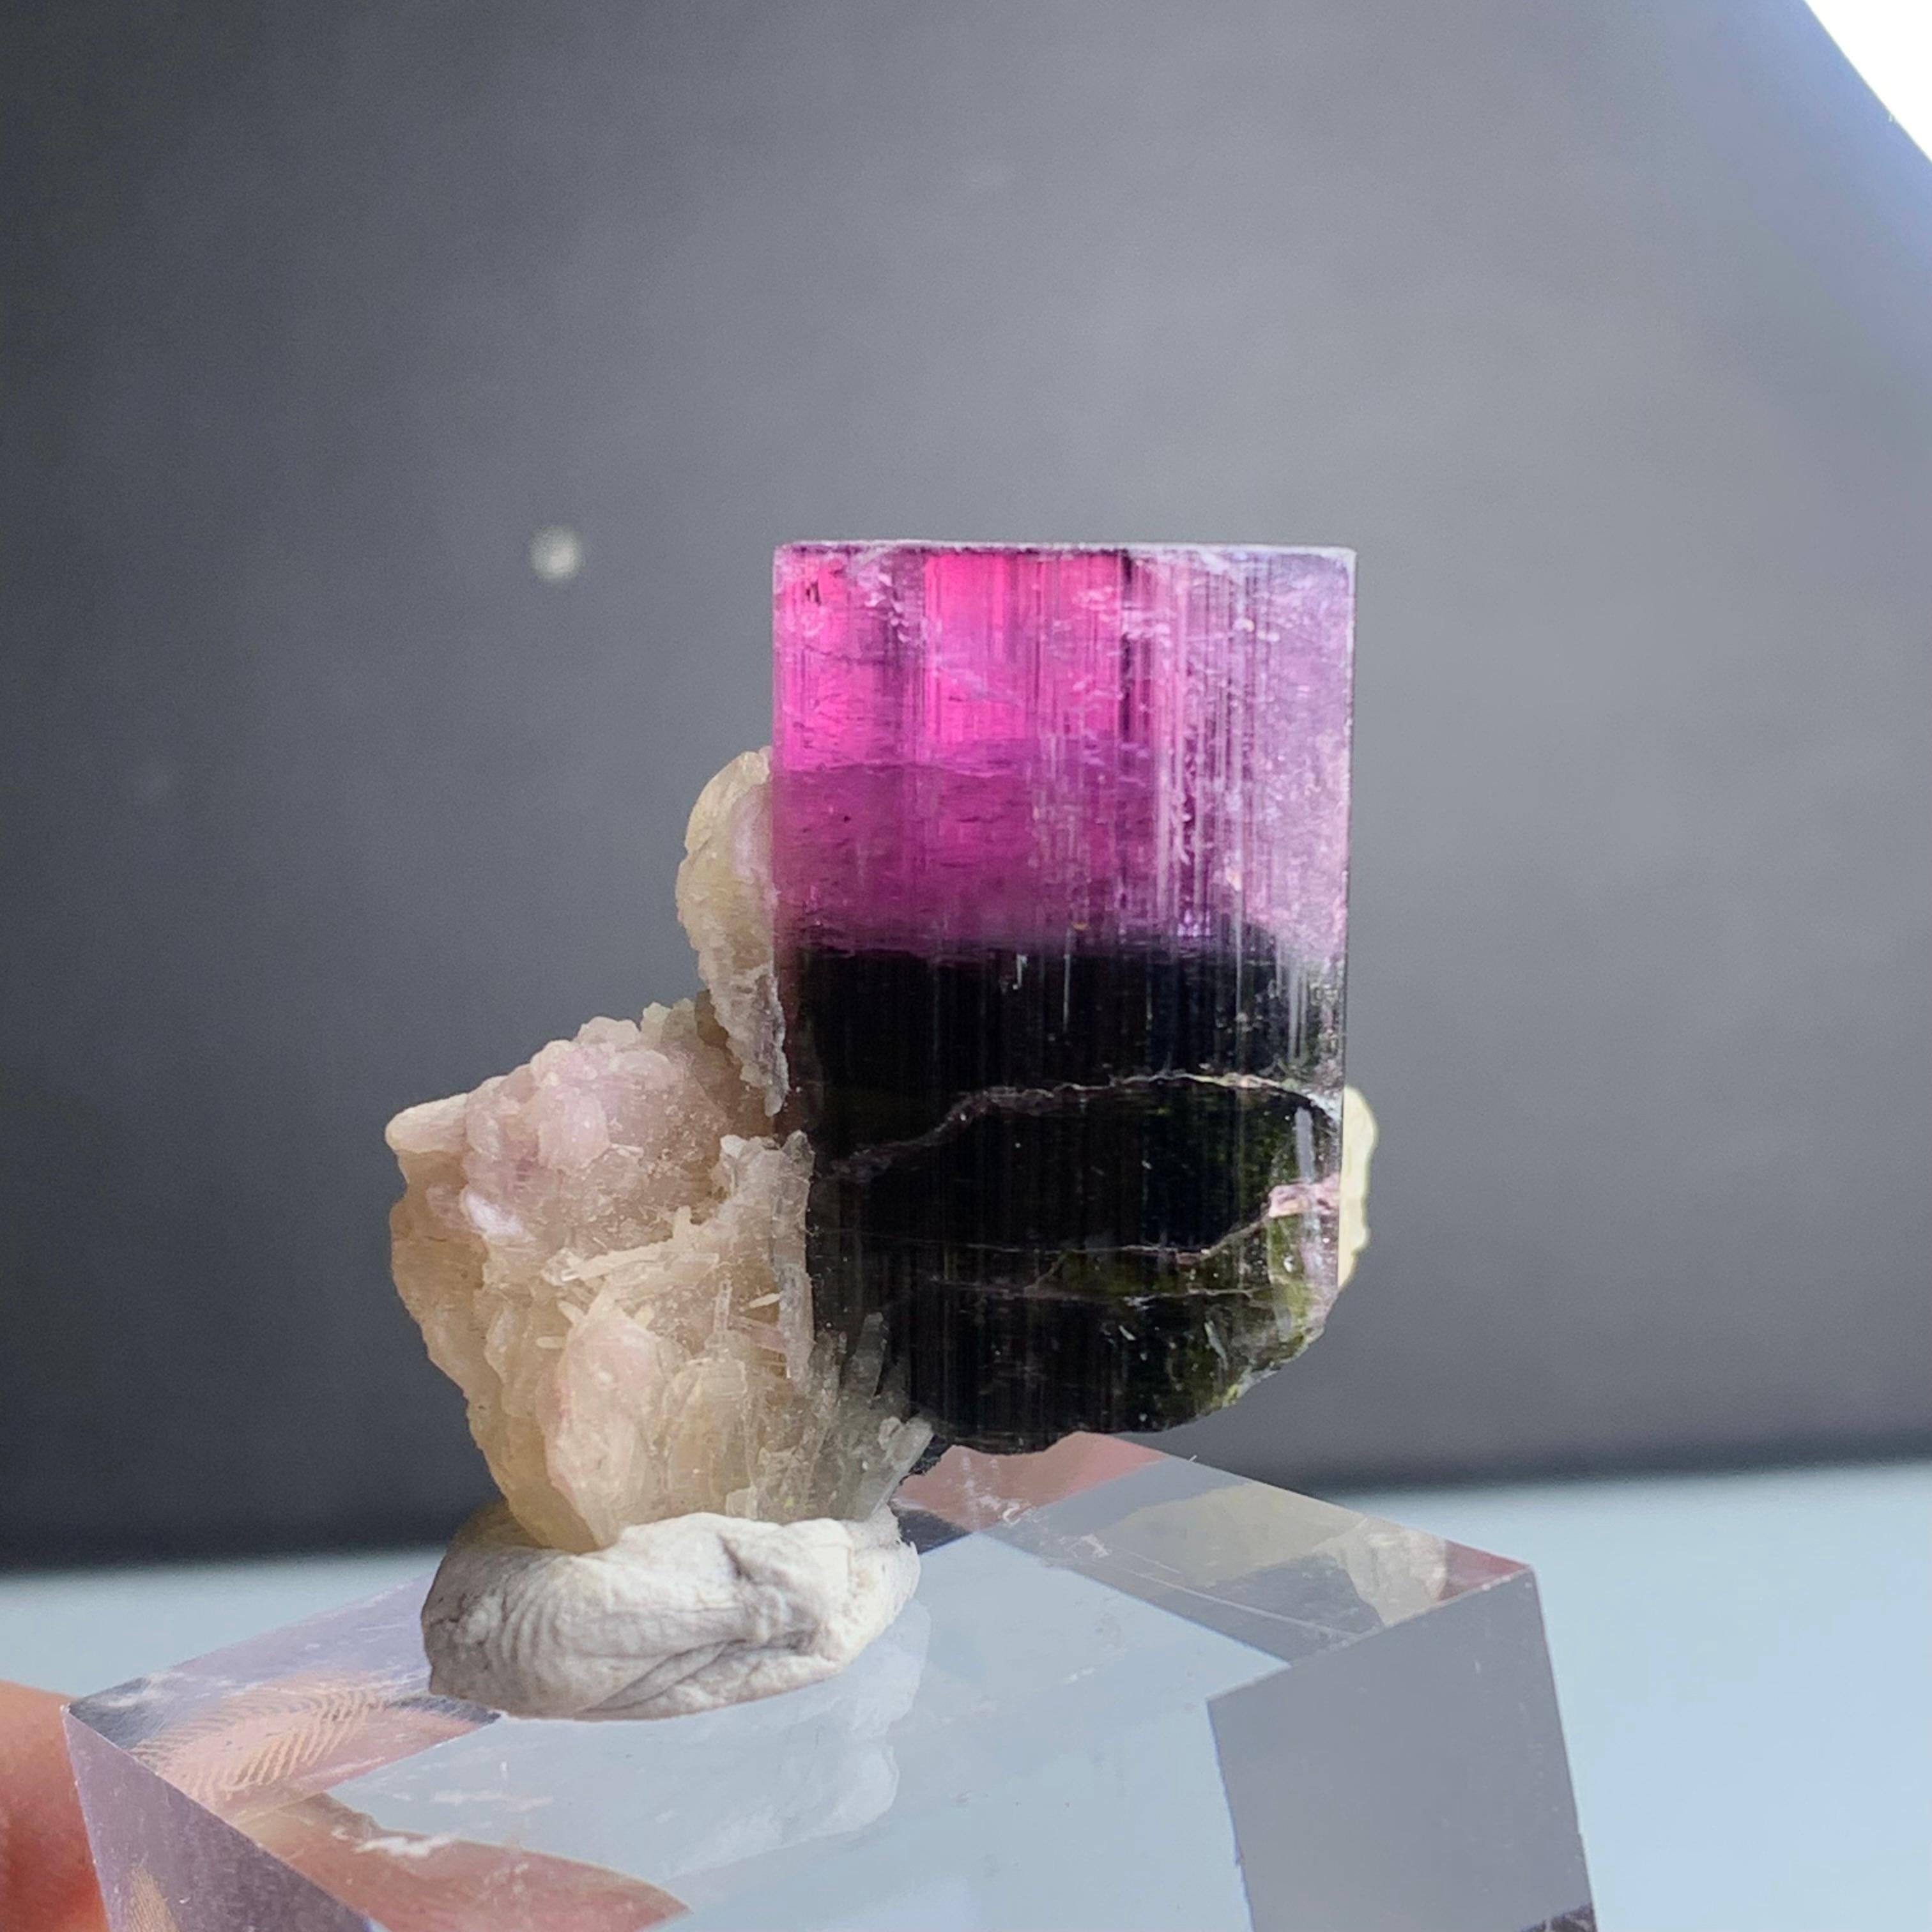 Natural 81.95 Gram Bicolor Tourmaline Crystal Elongated on Mica Specimen For Sale 1